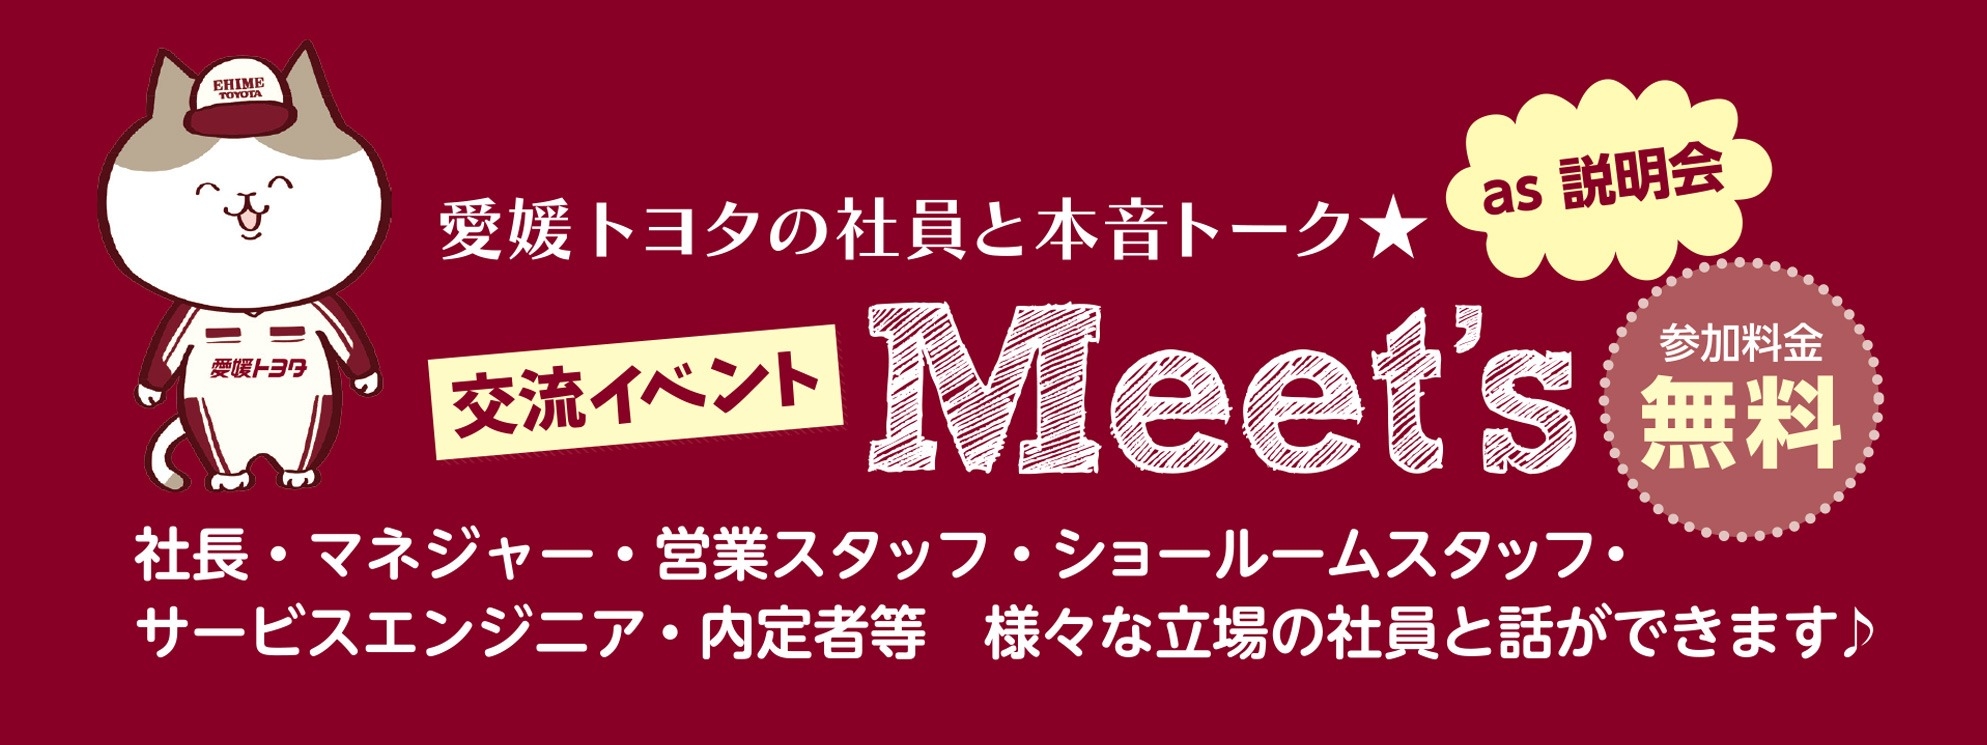 交流イベント Meet's